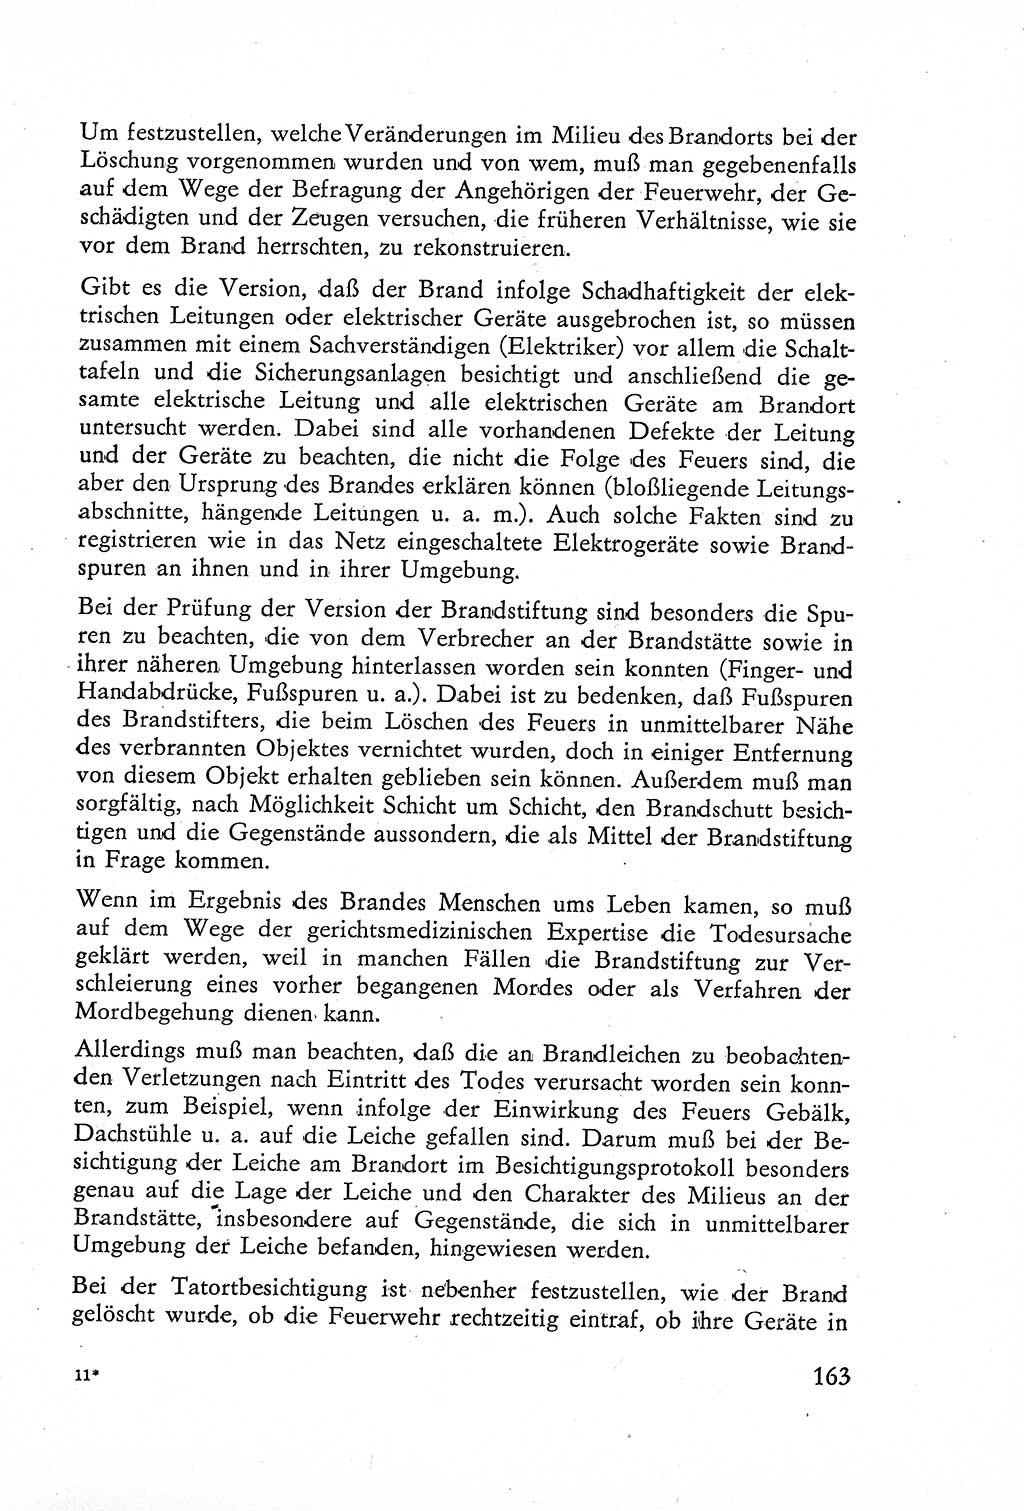 Die Untersuchung einzelner Verbrechensarten [Deutsche Demokratische Republik (DDR)] 1960, Seite 163 (Unters. Verbr.-Art. DDR 1960, S. 163)